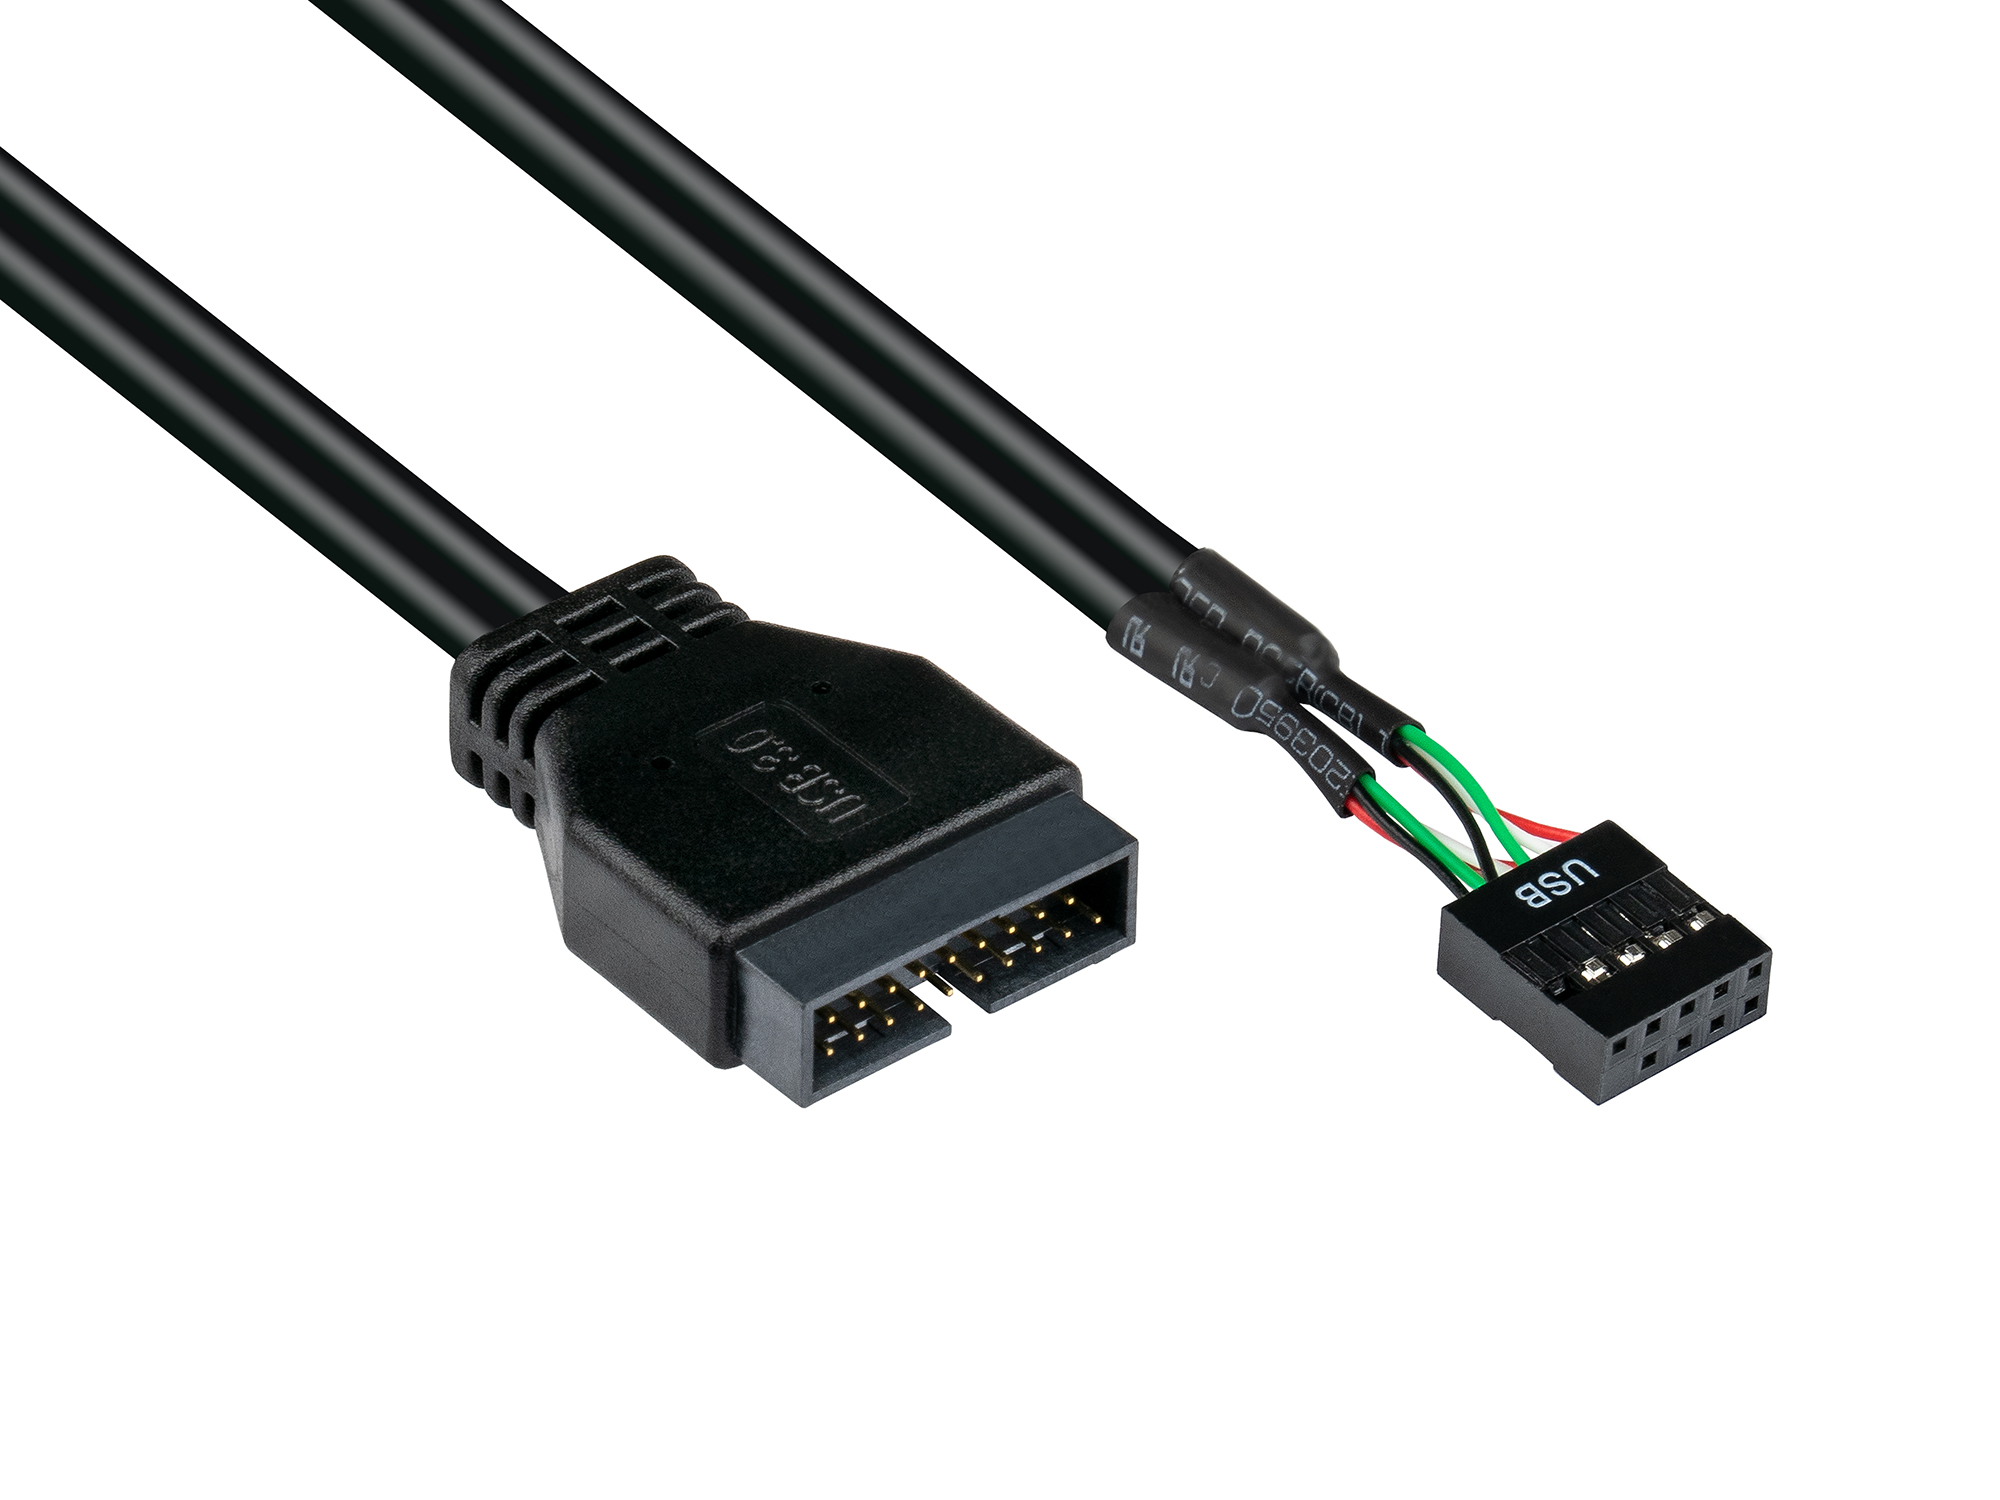 Adapter intern USB 3.0 Pin-Header Stecker an USB 2.0 Pin-Header Buchse, schwarz, 0,15m